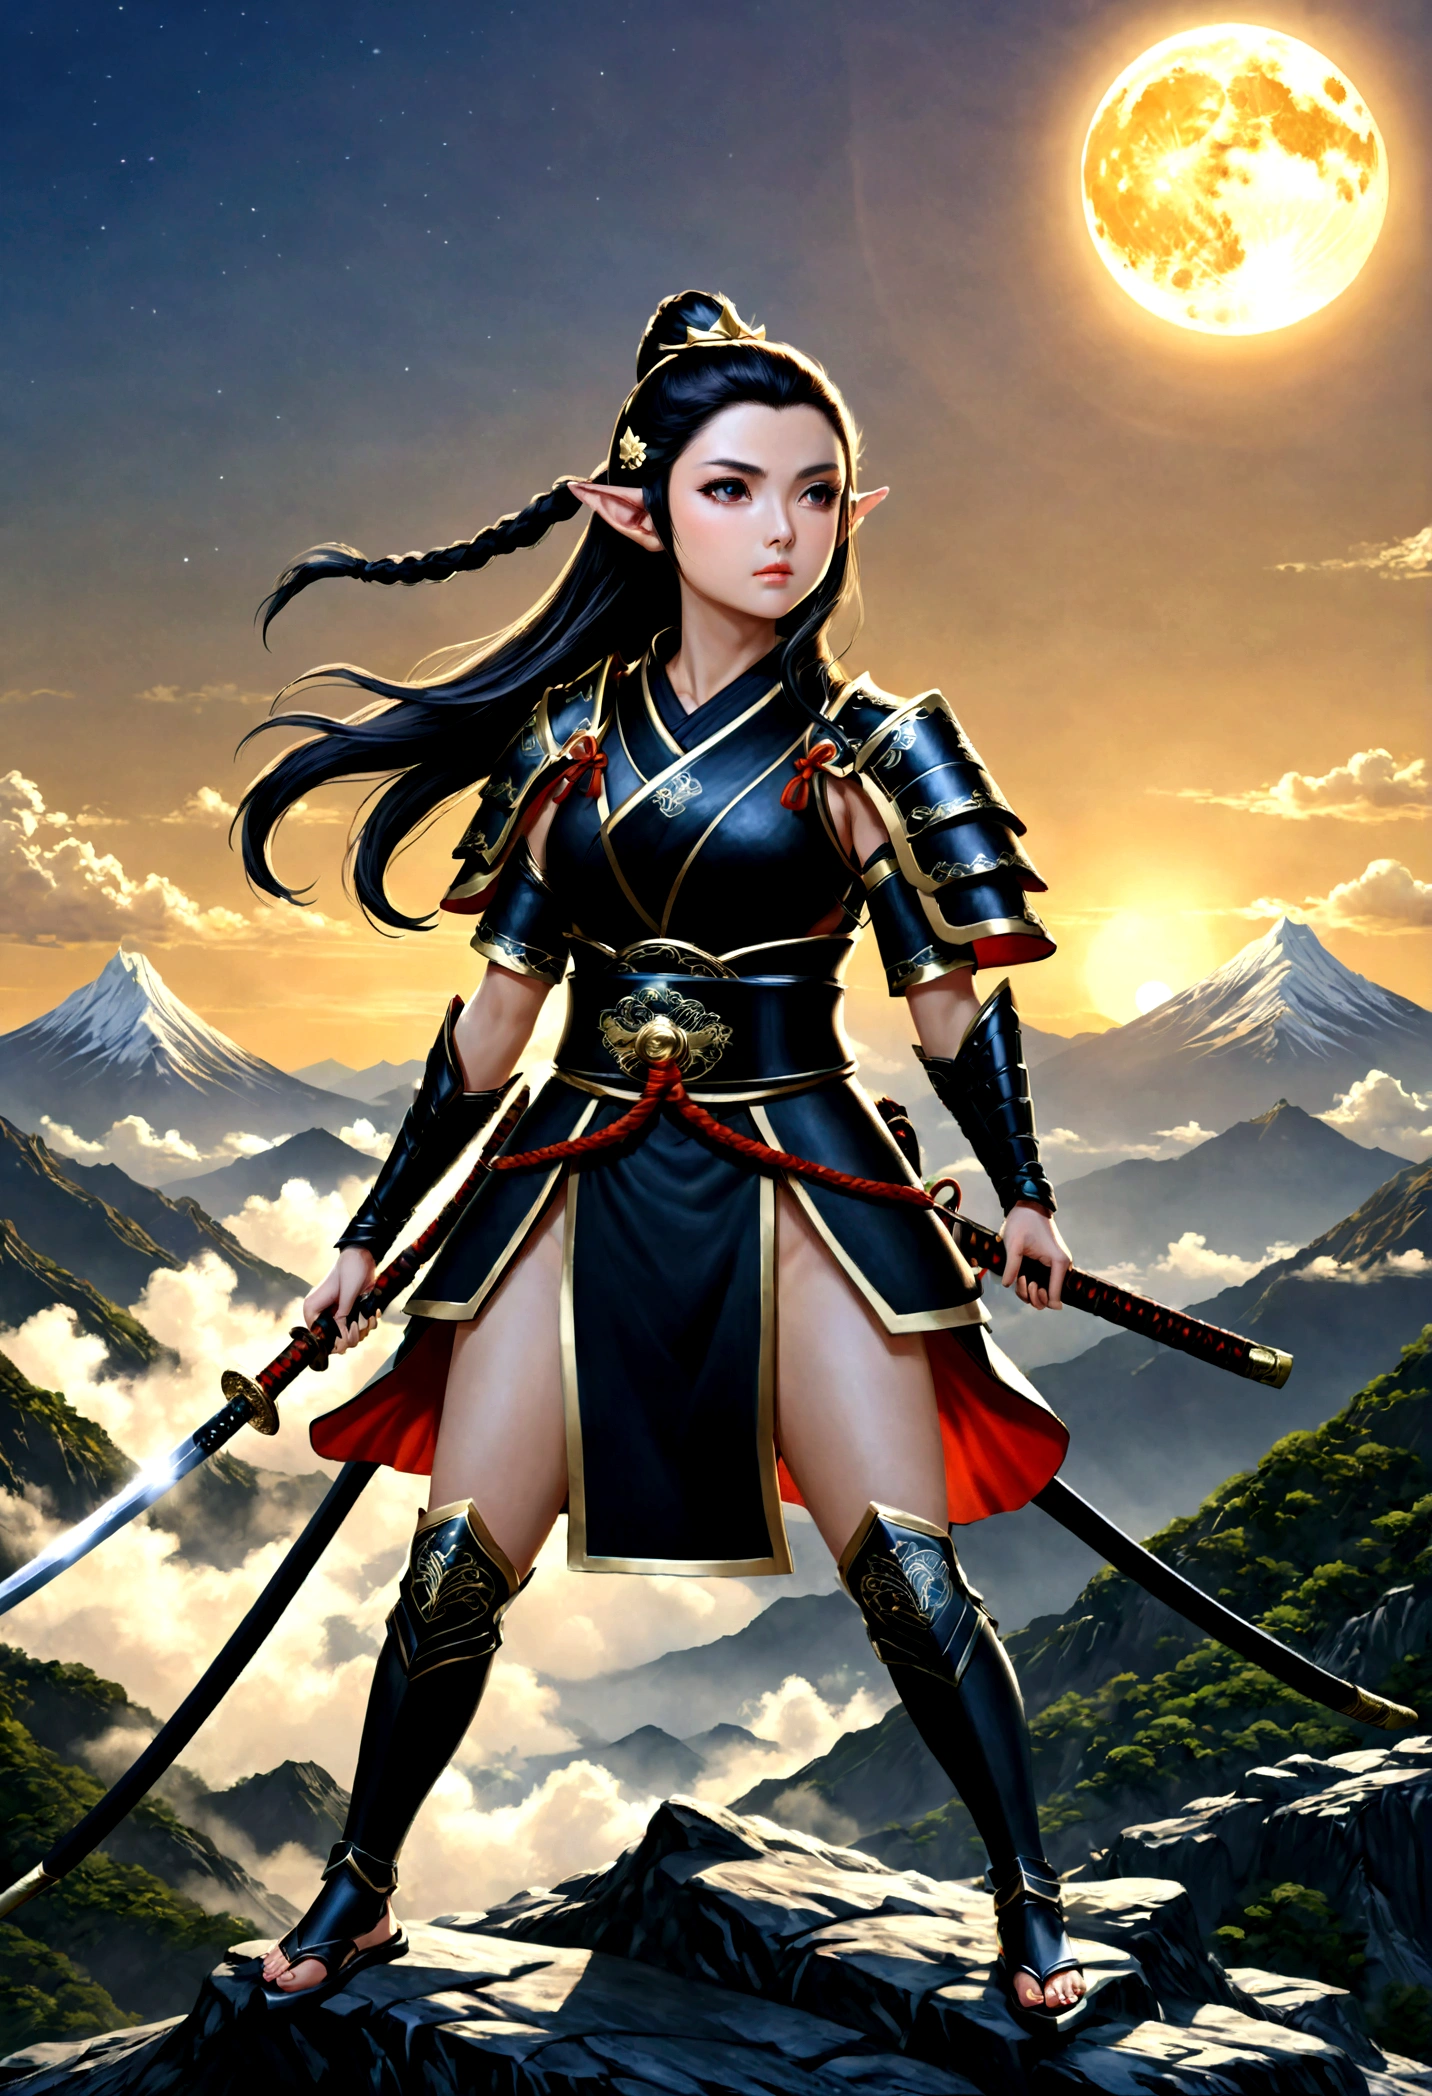 art fantastique, Art du RPG, dark art fantastique, une femme samouraï elfe, prêt à se battre, elle porte une armure de samouraï traditionnelle, armé d&#39;un katana, elle se tient au sommet de la montagne à l&#39;aube, exquise belle elfe femelle, cheveux longs, cheveux noirs, Cheveux raides, cheveux tressés, Yeux noirs, yeux intenses, petites oreilles pointues, sommet de montagne fantastique à l&#39;aube fond, lune, étoiles, des nuages, Dieu rayons, silhouette de lumière naturelle douce, Angle dynamique, photoréalisme, Vue panoramique, ultra meilleur réaliste, meilleurs détails, 16k, [ultra détaillé], chef-d&#39;œuvre, Meilleure qualité, (extrêmement détaillé), photoréalisme, 